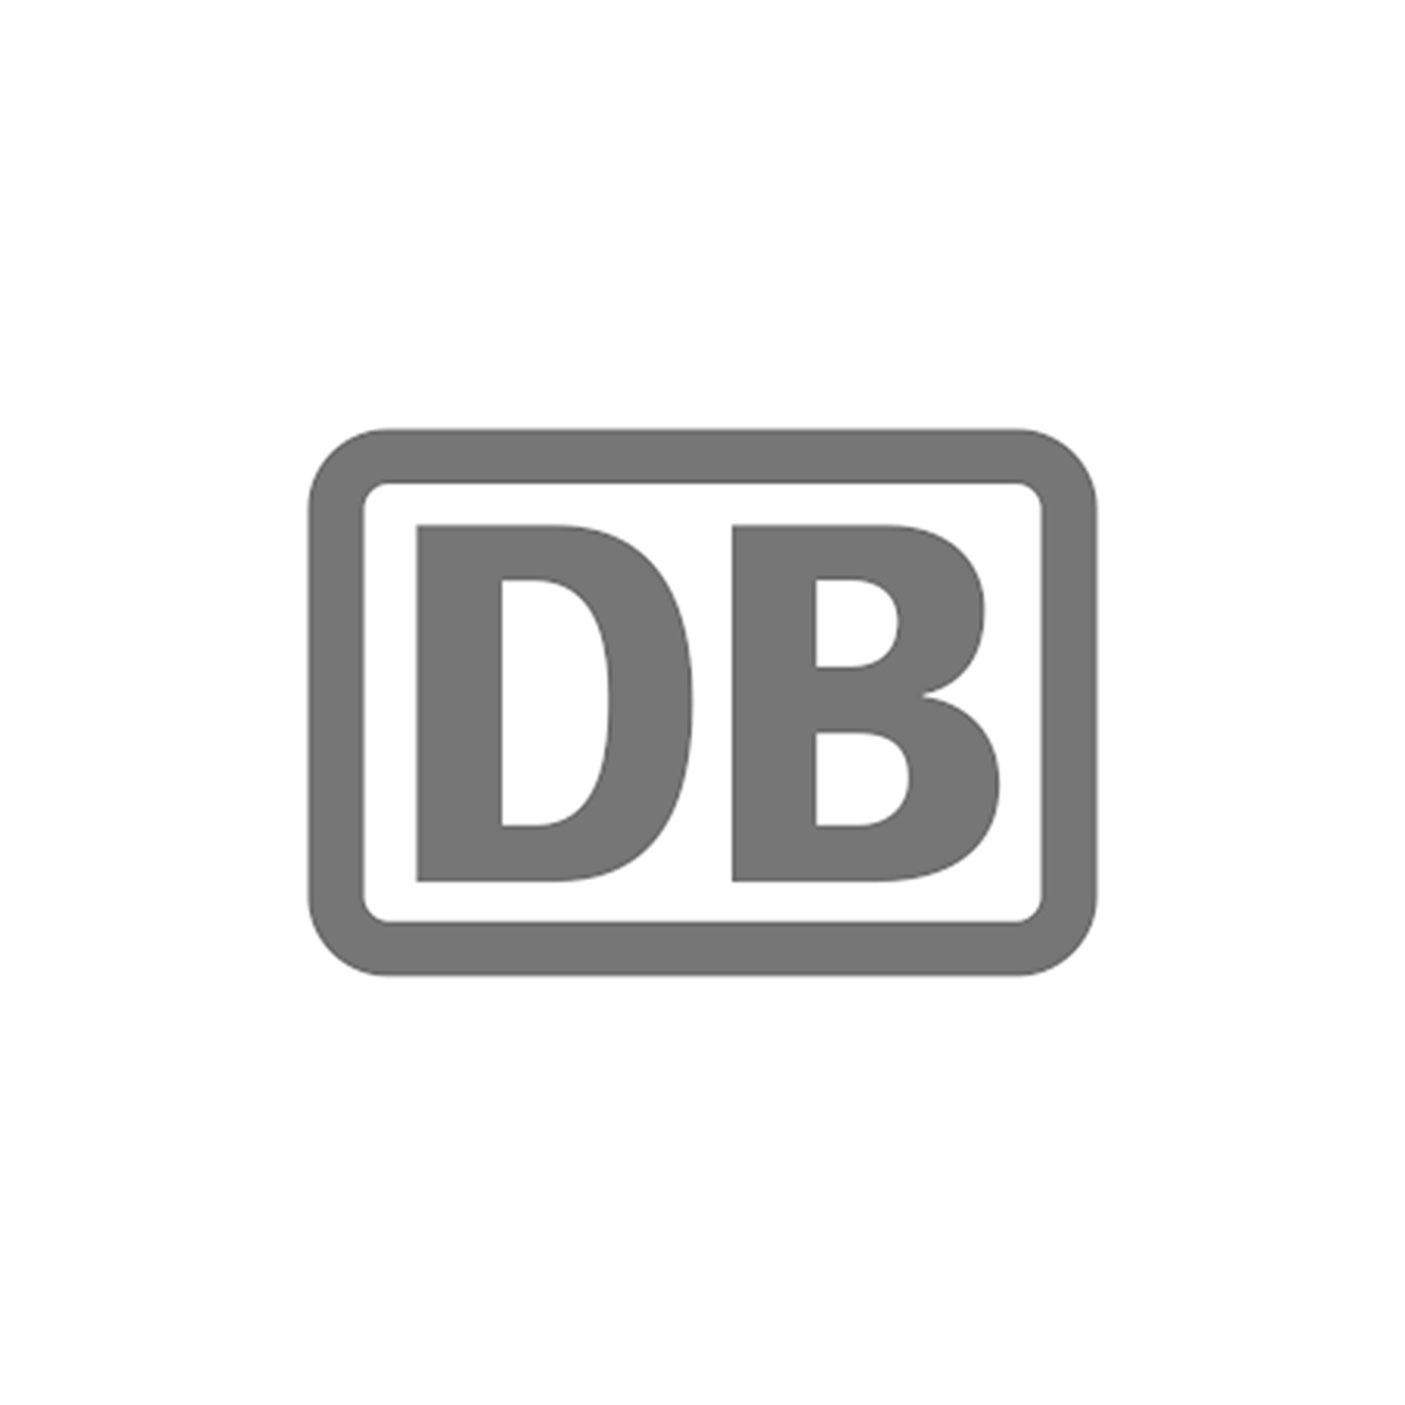  Deutsche Bahn Services 